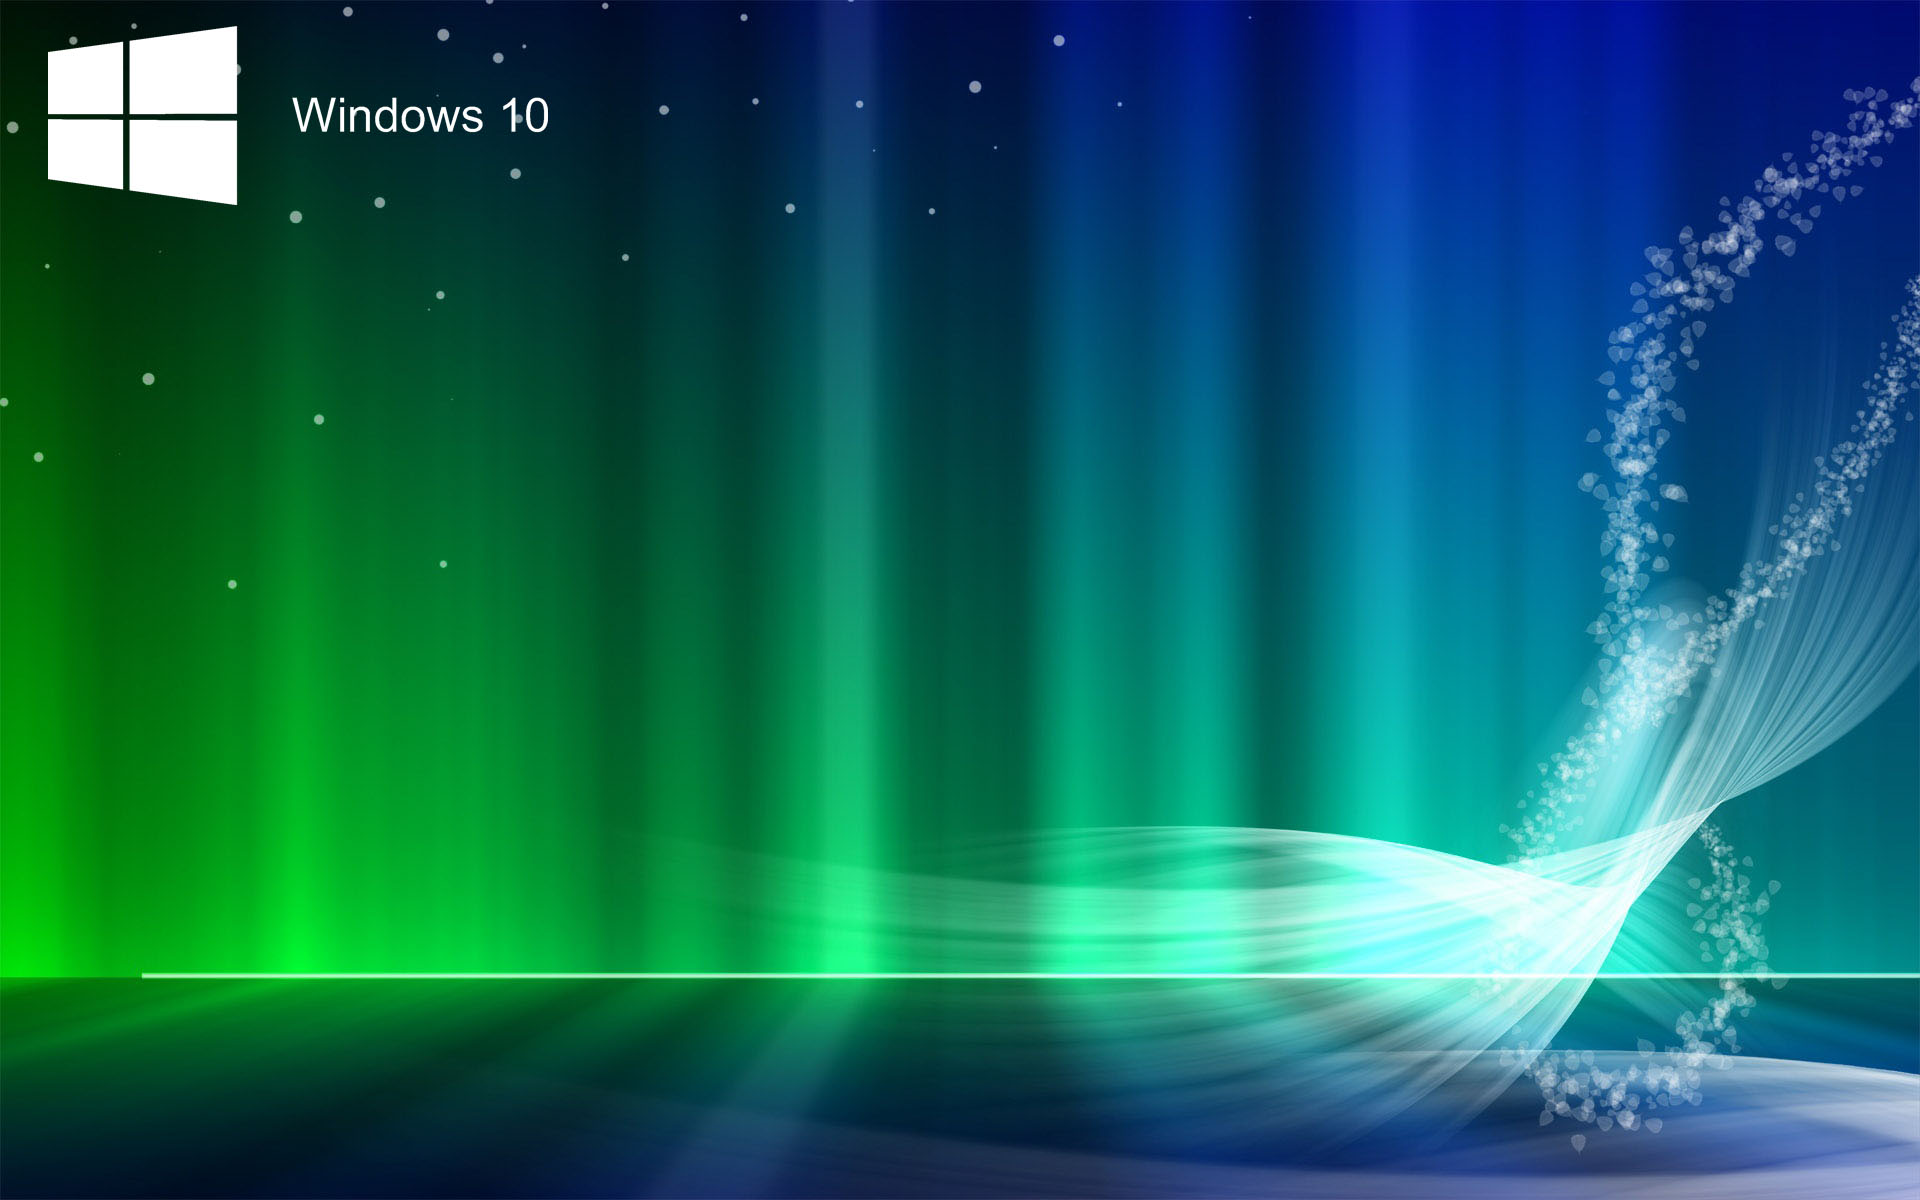 Laptop HD Wallpapers For Windows 10 - PixelsTalk.Net